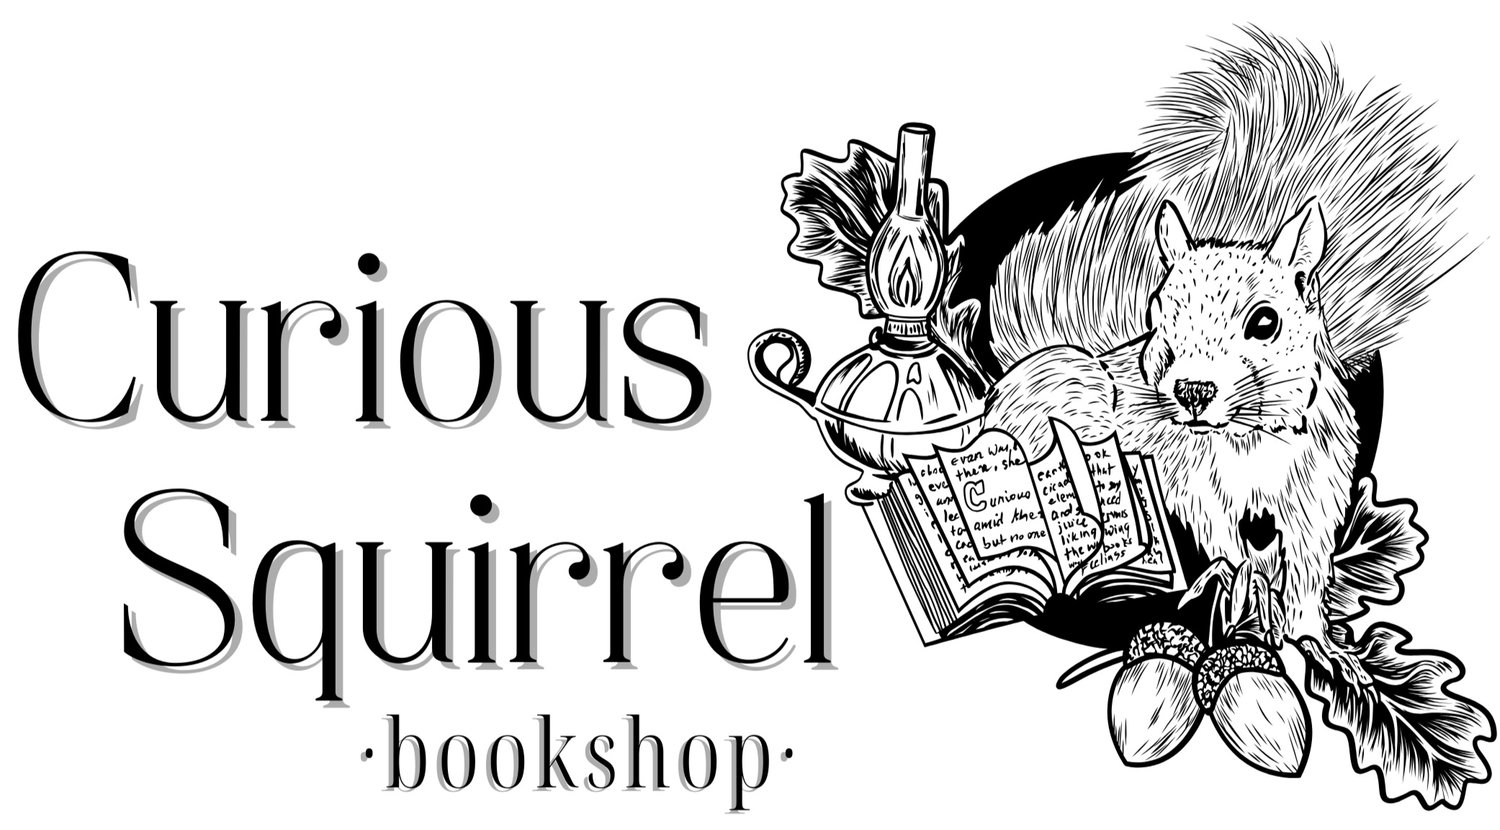 Curious Squirrel Bookshop